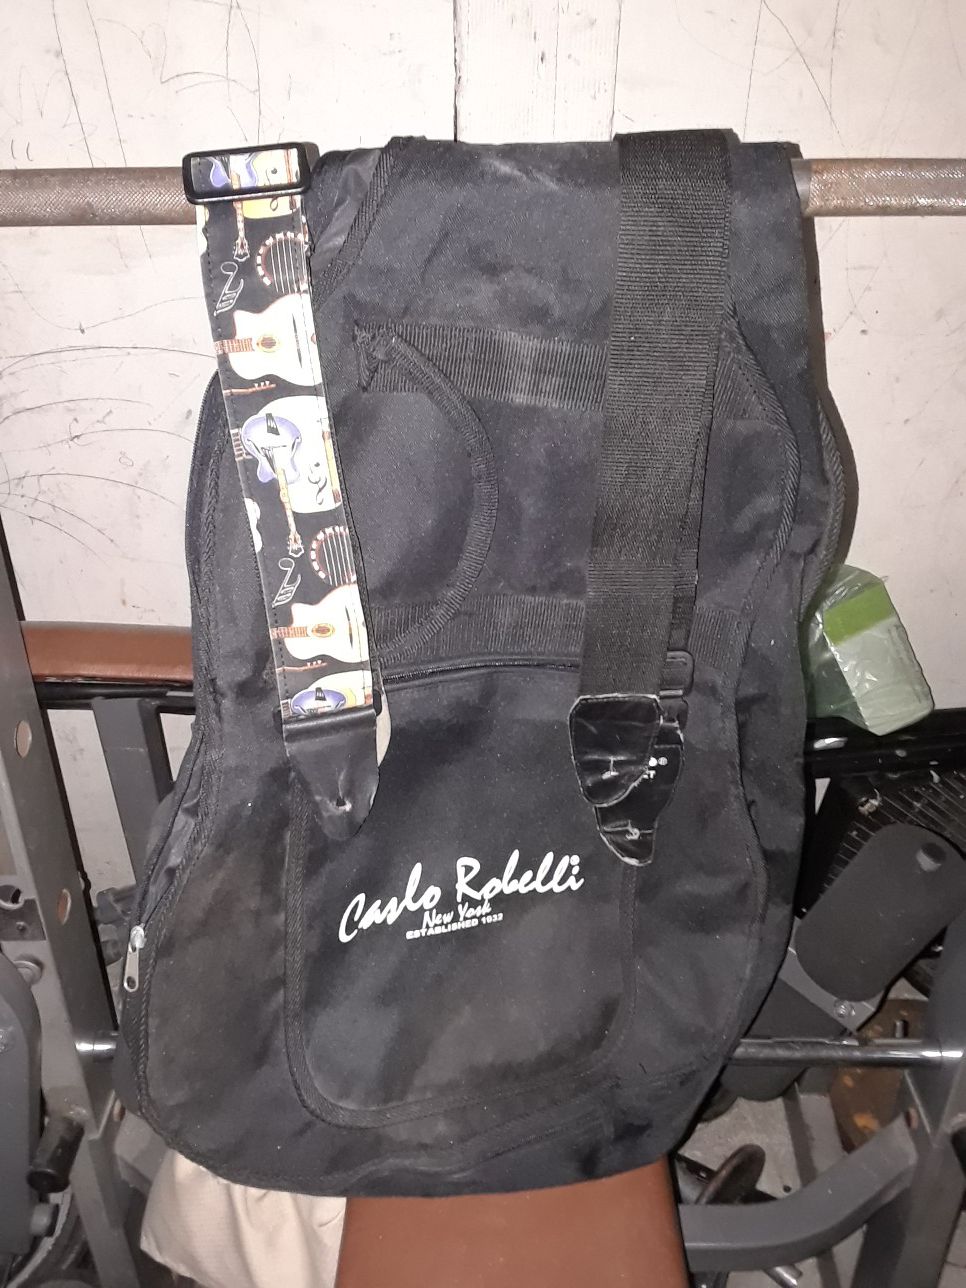 Guitar bag n 2 guitar straps